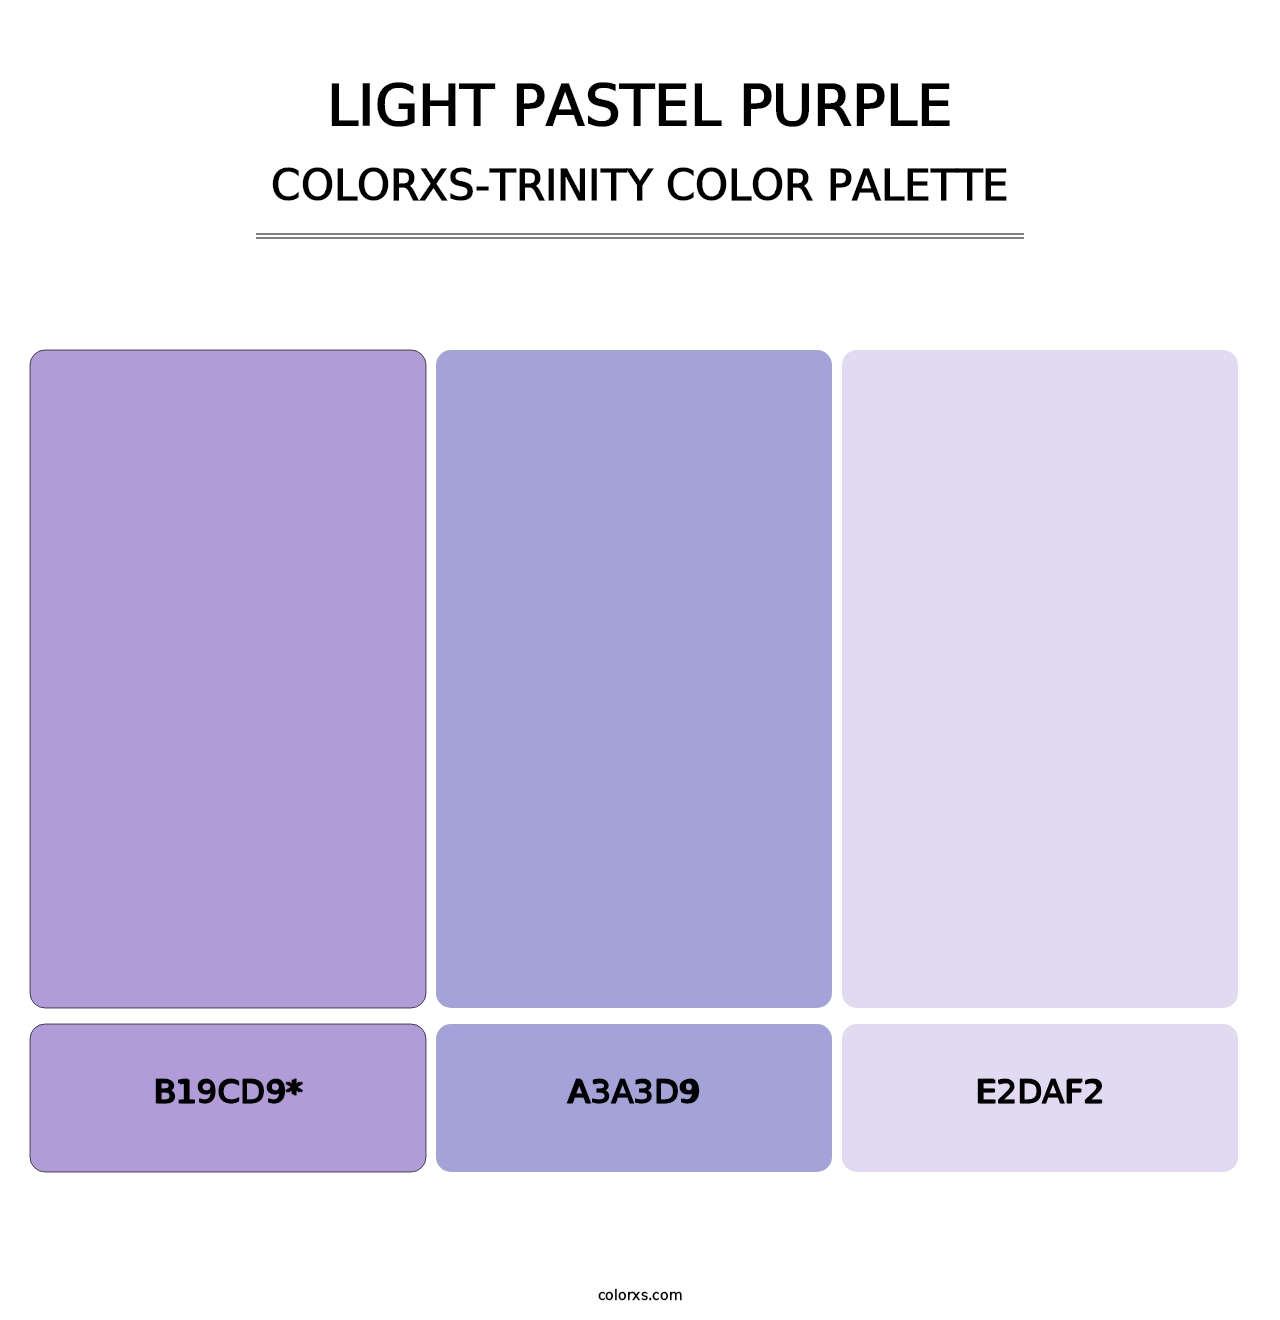 Light Pastel Purple - Colorxs Trinity Palette